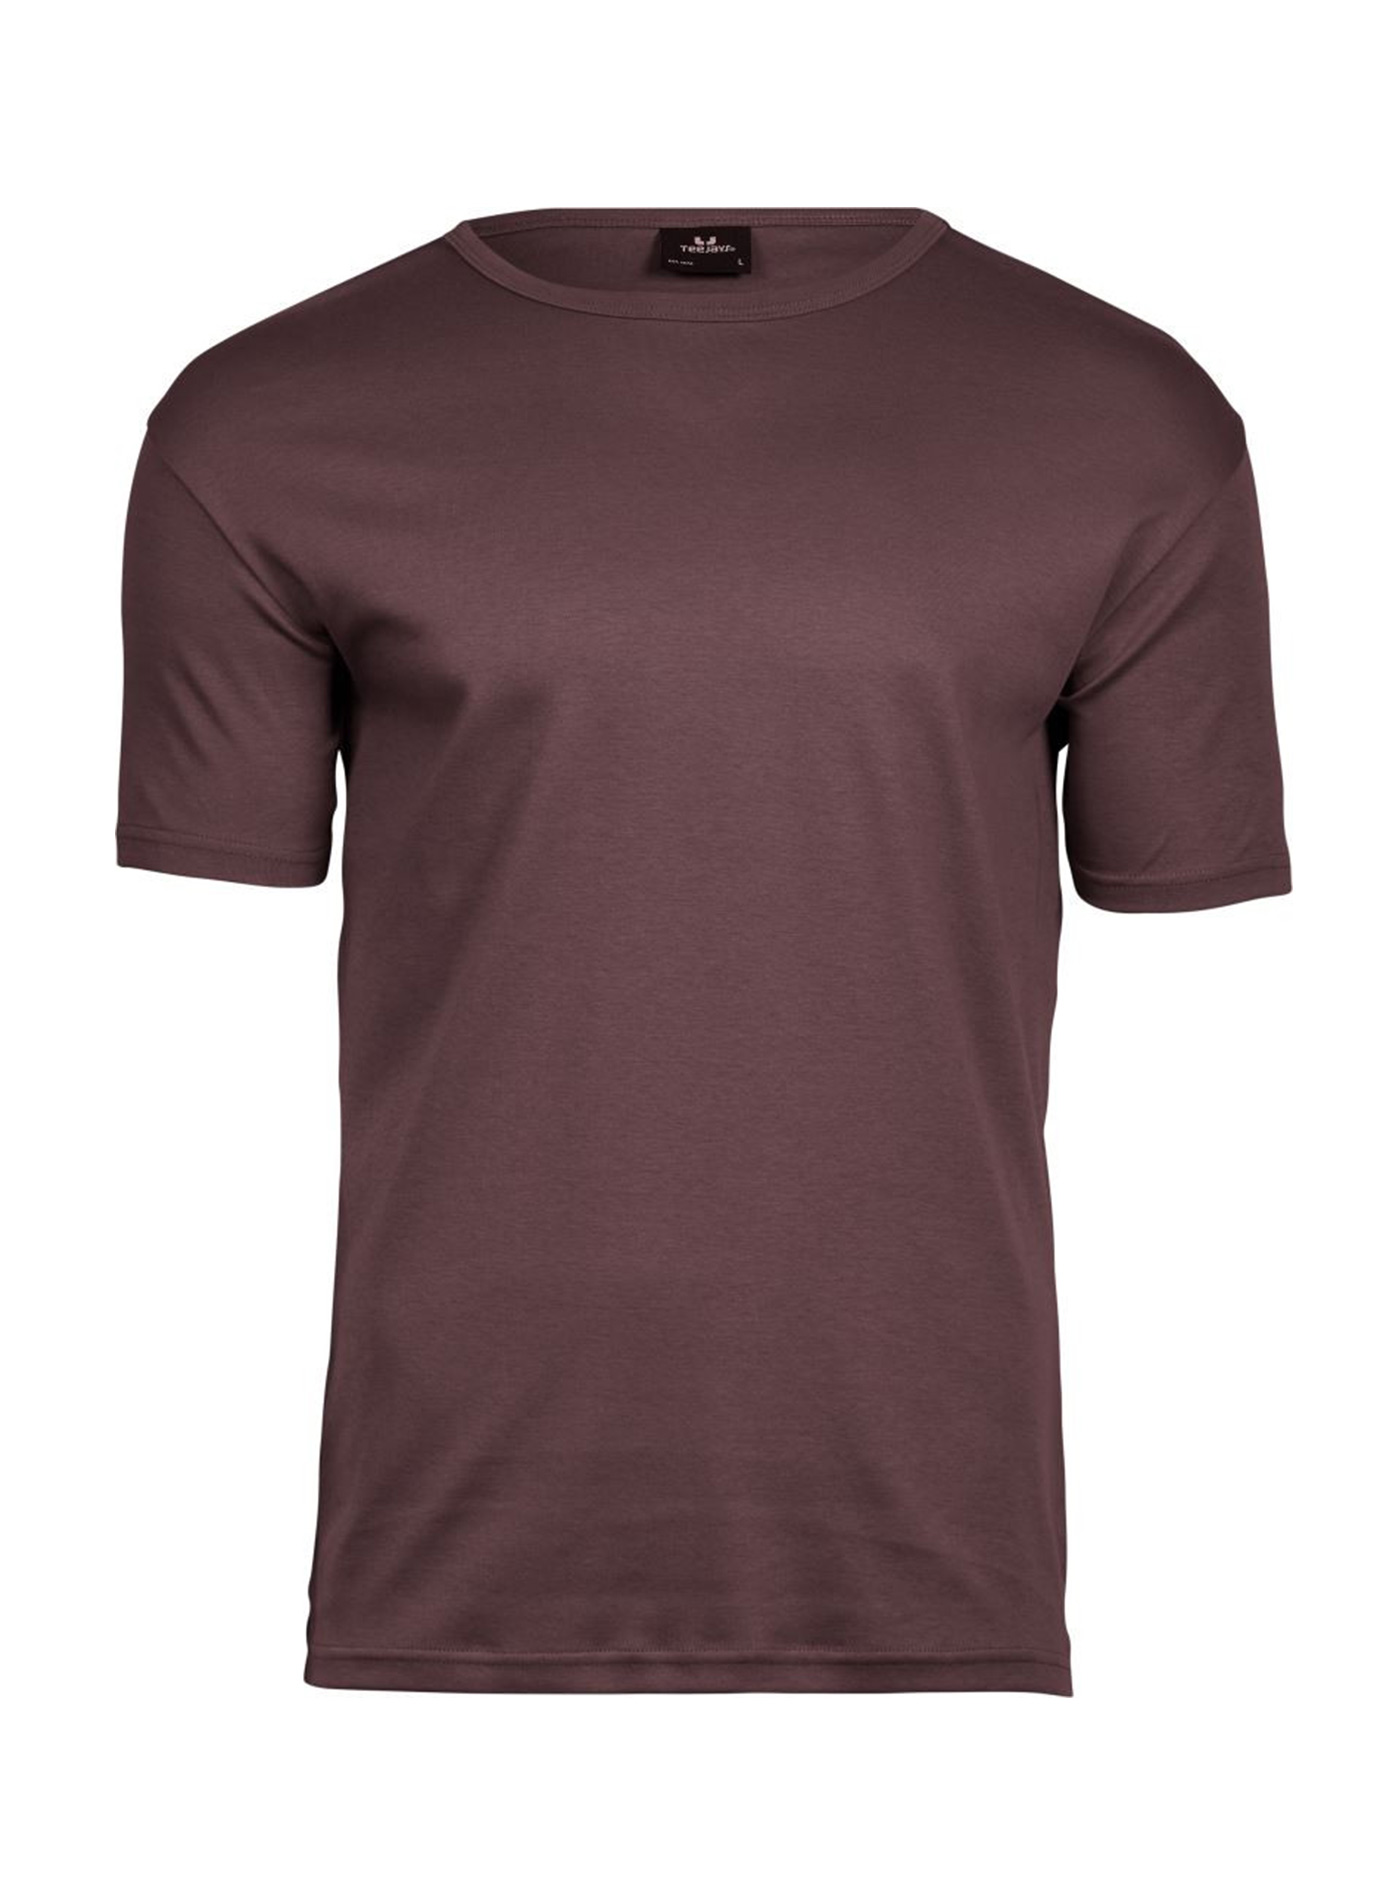 Silné bavlněné tričko Tee Jays Interlock - Hnědočervená M